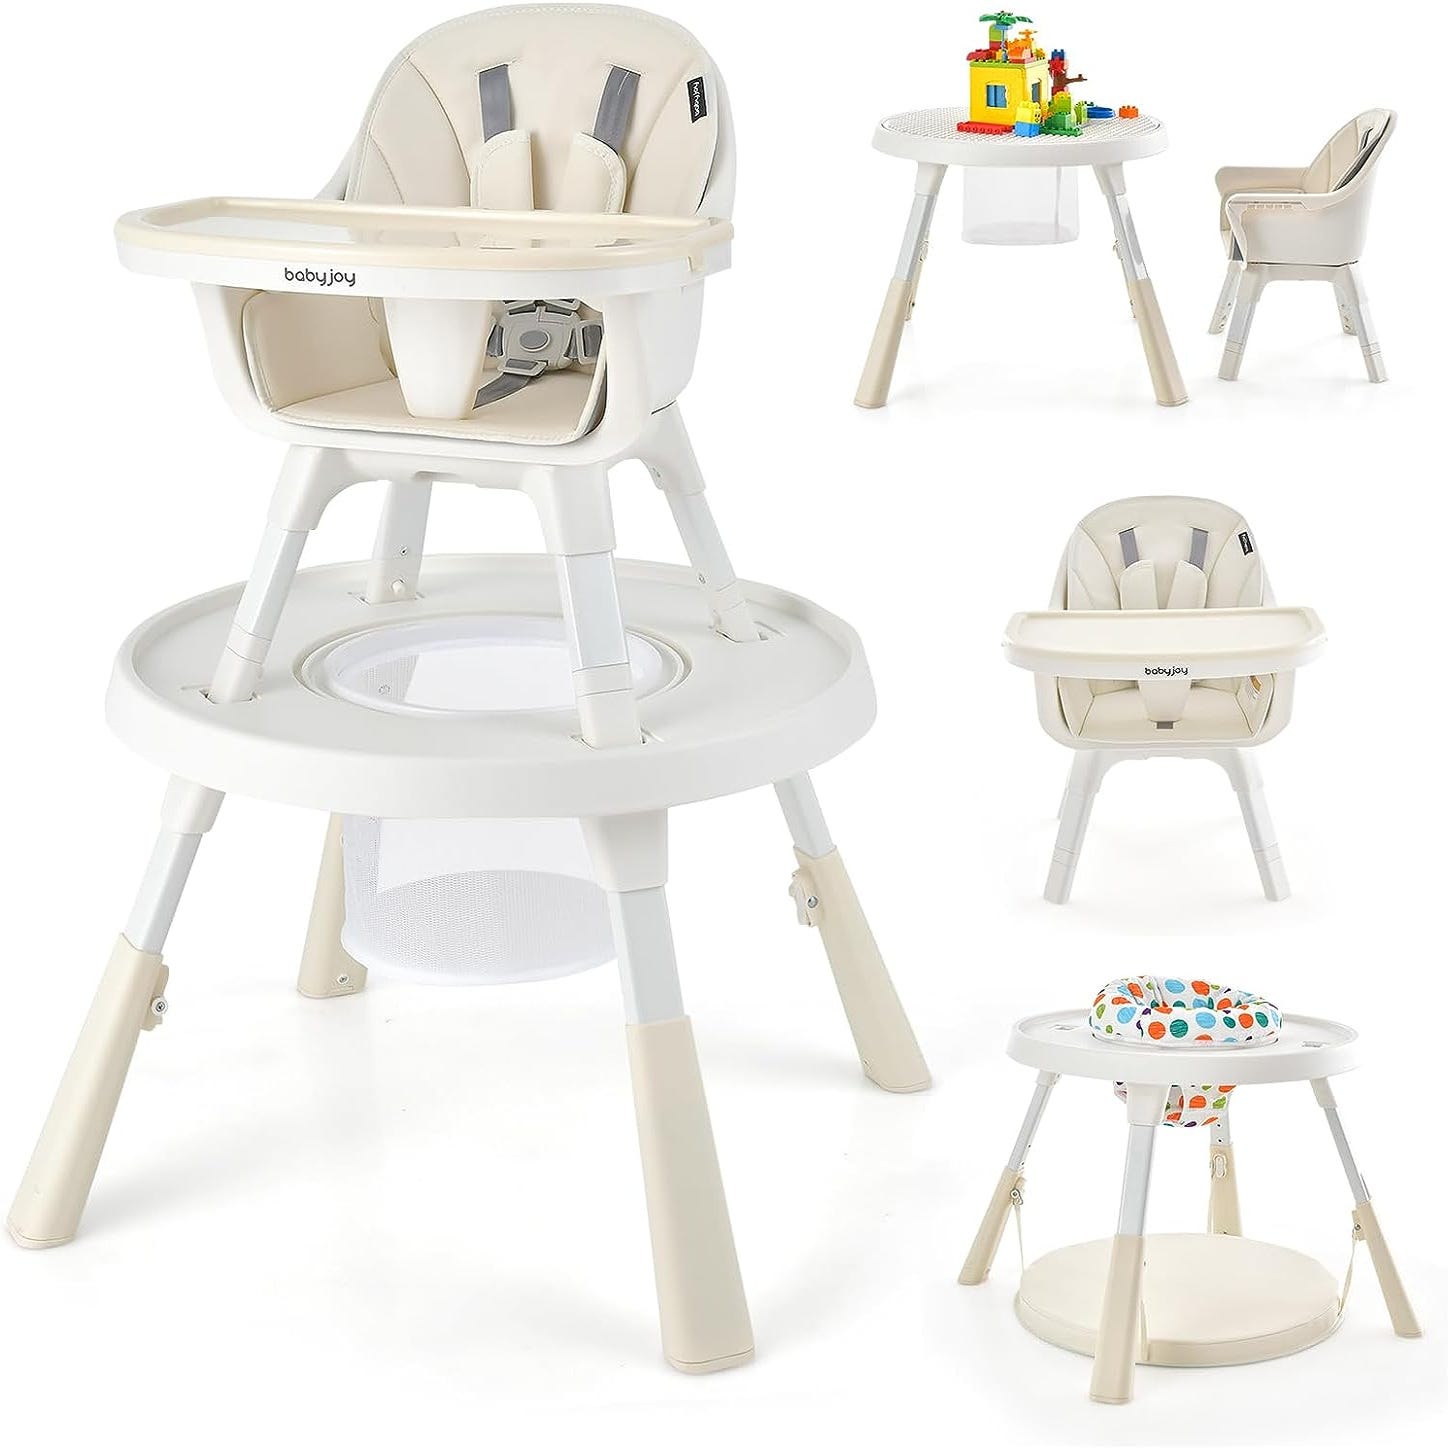 Chaise haute bébé : chaise évolutive et fixe pour les repas de bébé